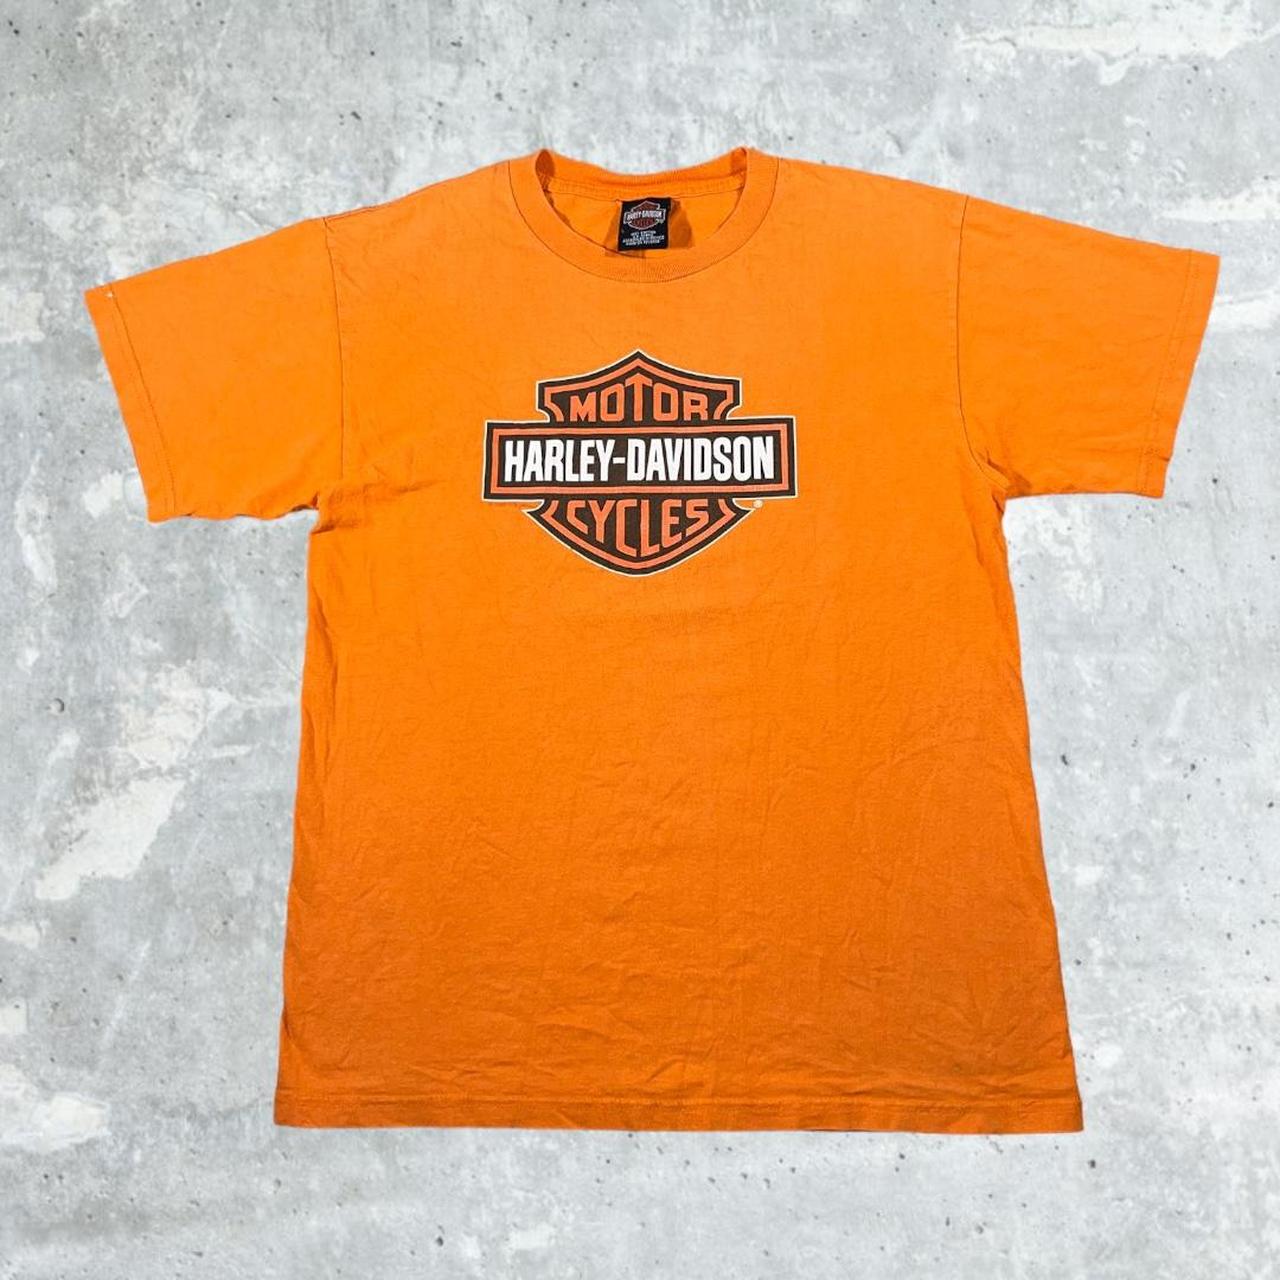 2004 Harley Davidson Orange Flames Tee Size : L... - Depop